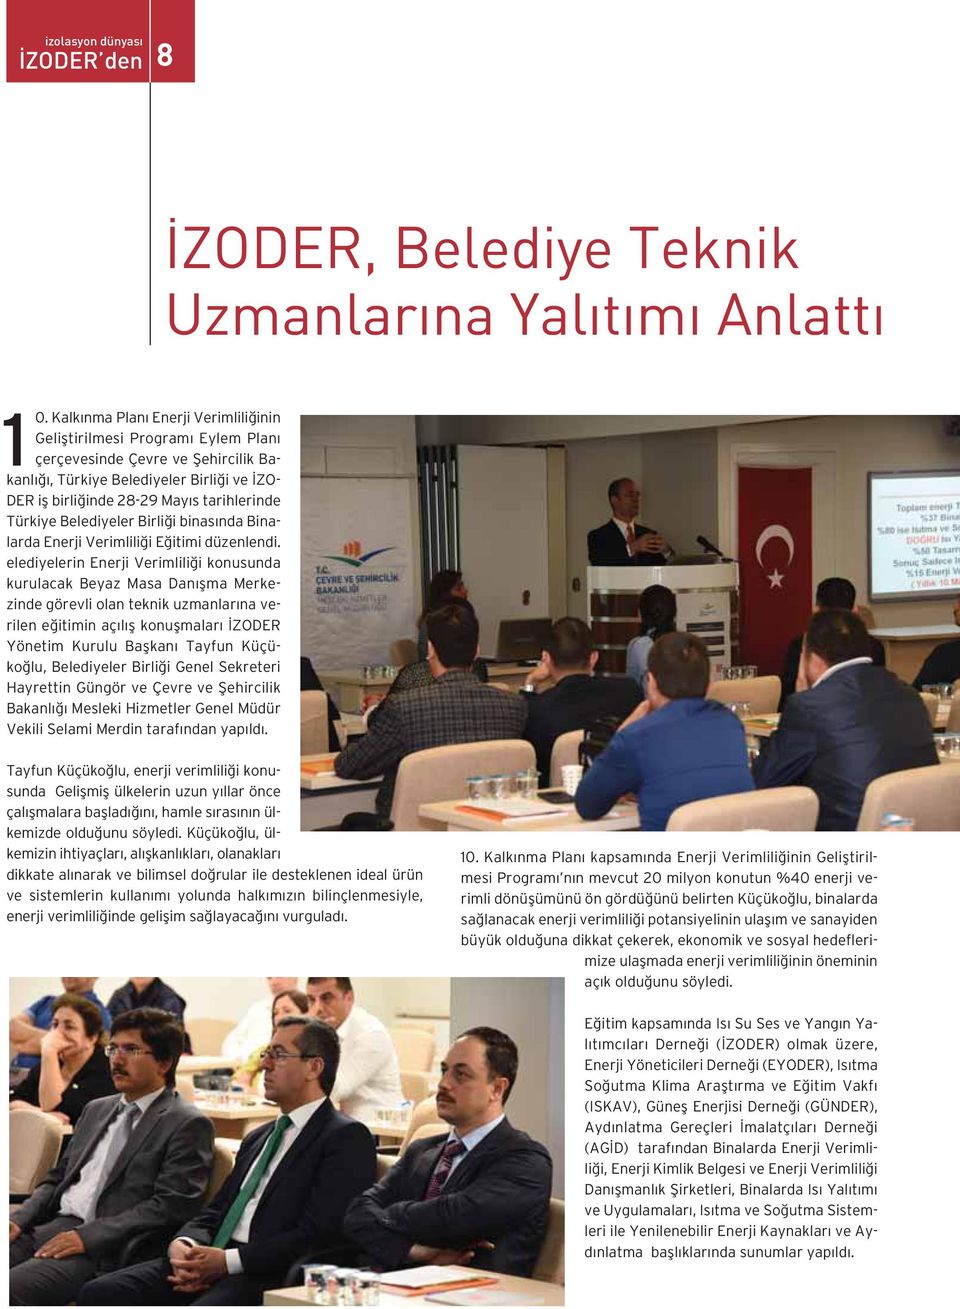 Türkiye Belediyeler Birliği binasında Binalarda Enerji Verimliliği Eğitimi düzenlendi.